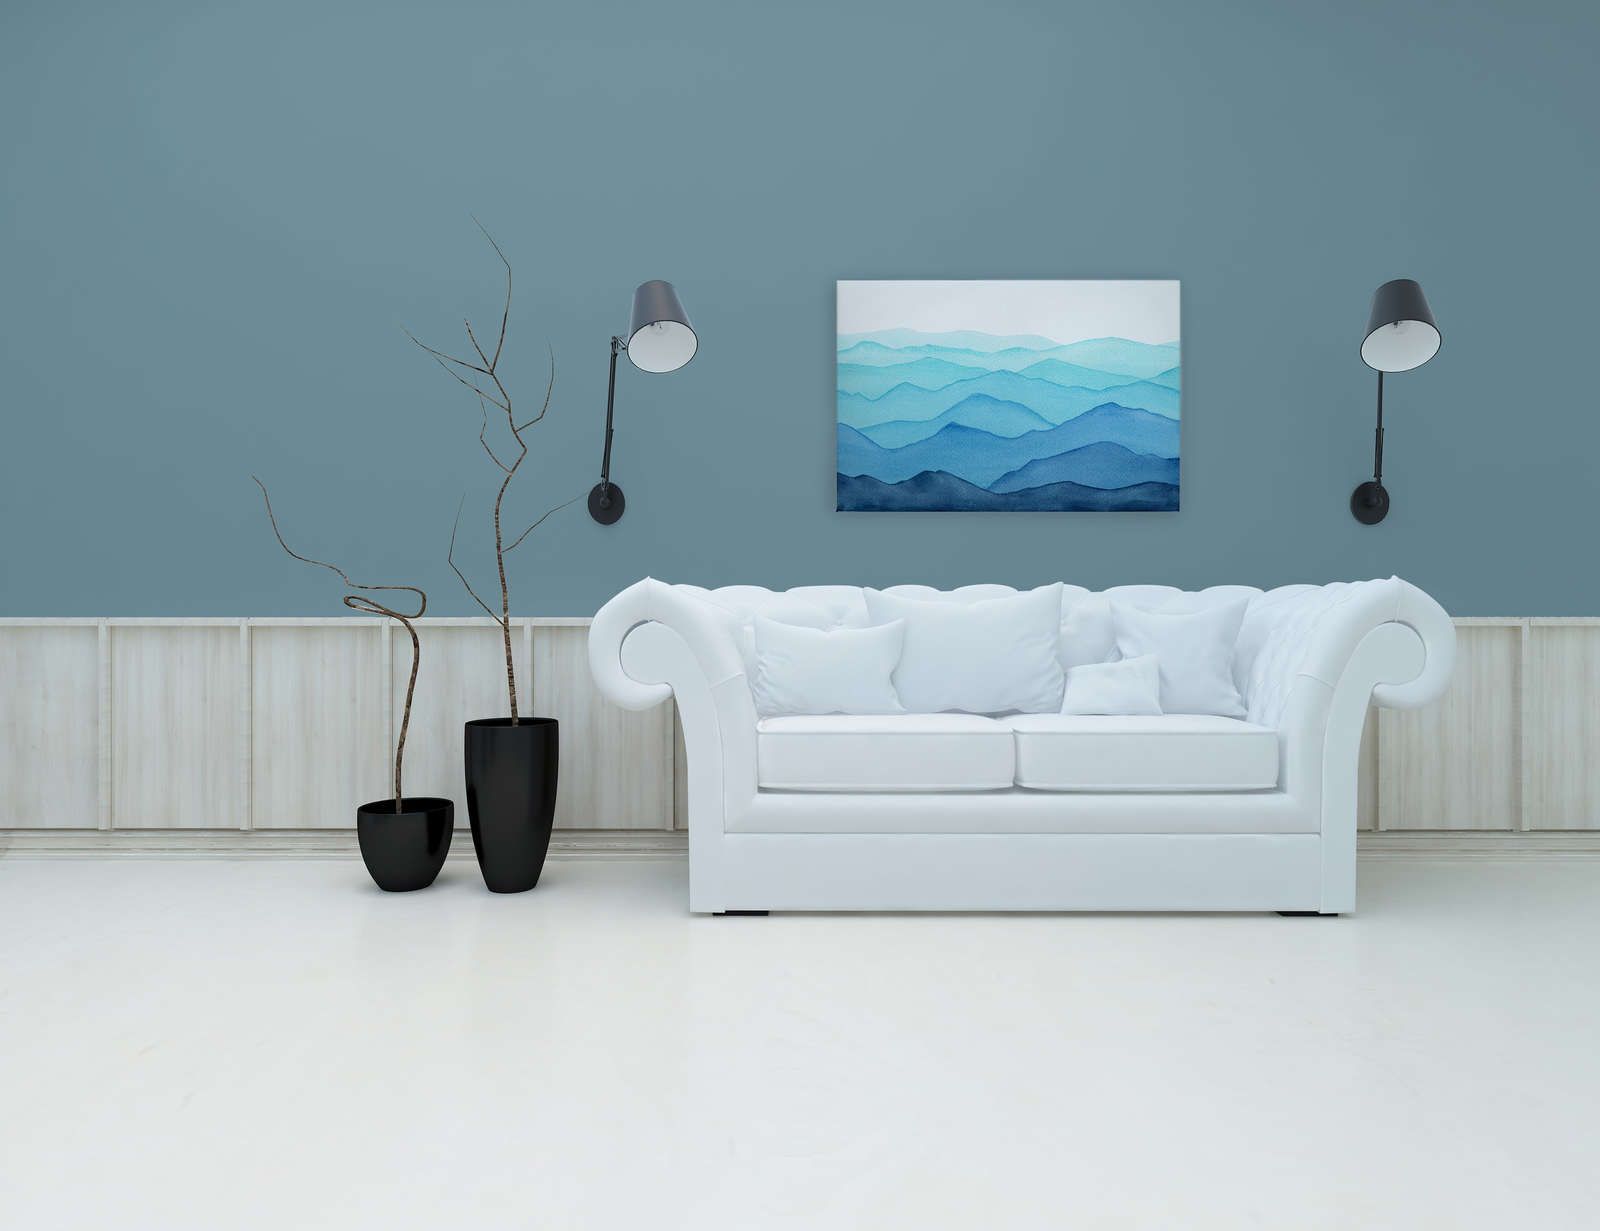             Toile Mer avec vagues à l'aquarelle - 90 cm x 60 cm
        